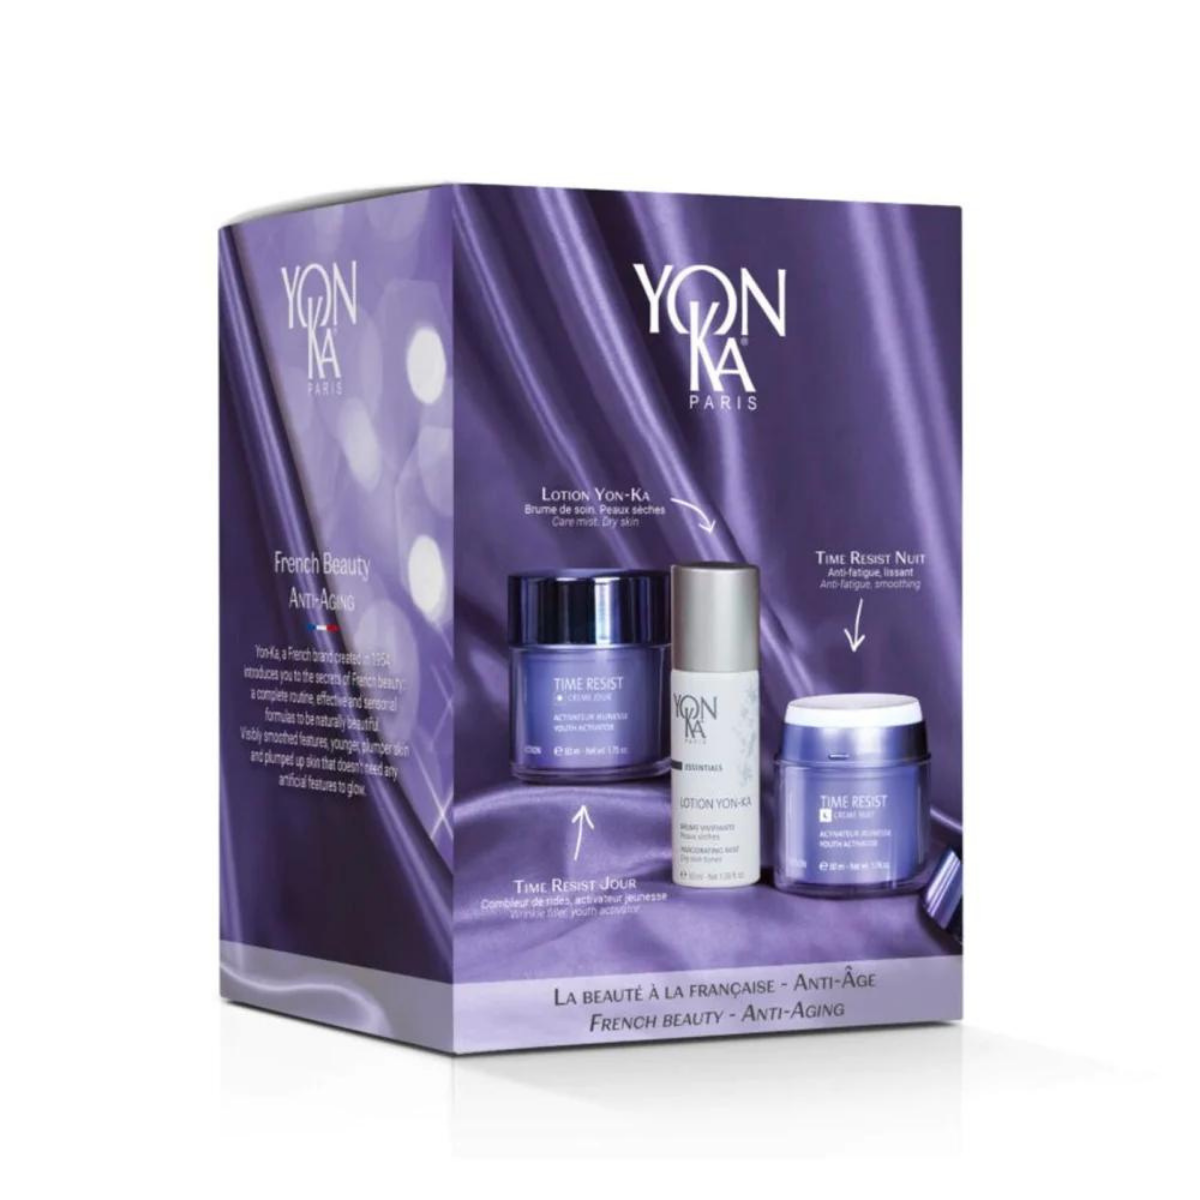 Yonka French Beauty- Anti Aging Gift Set